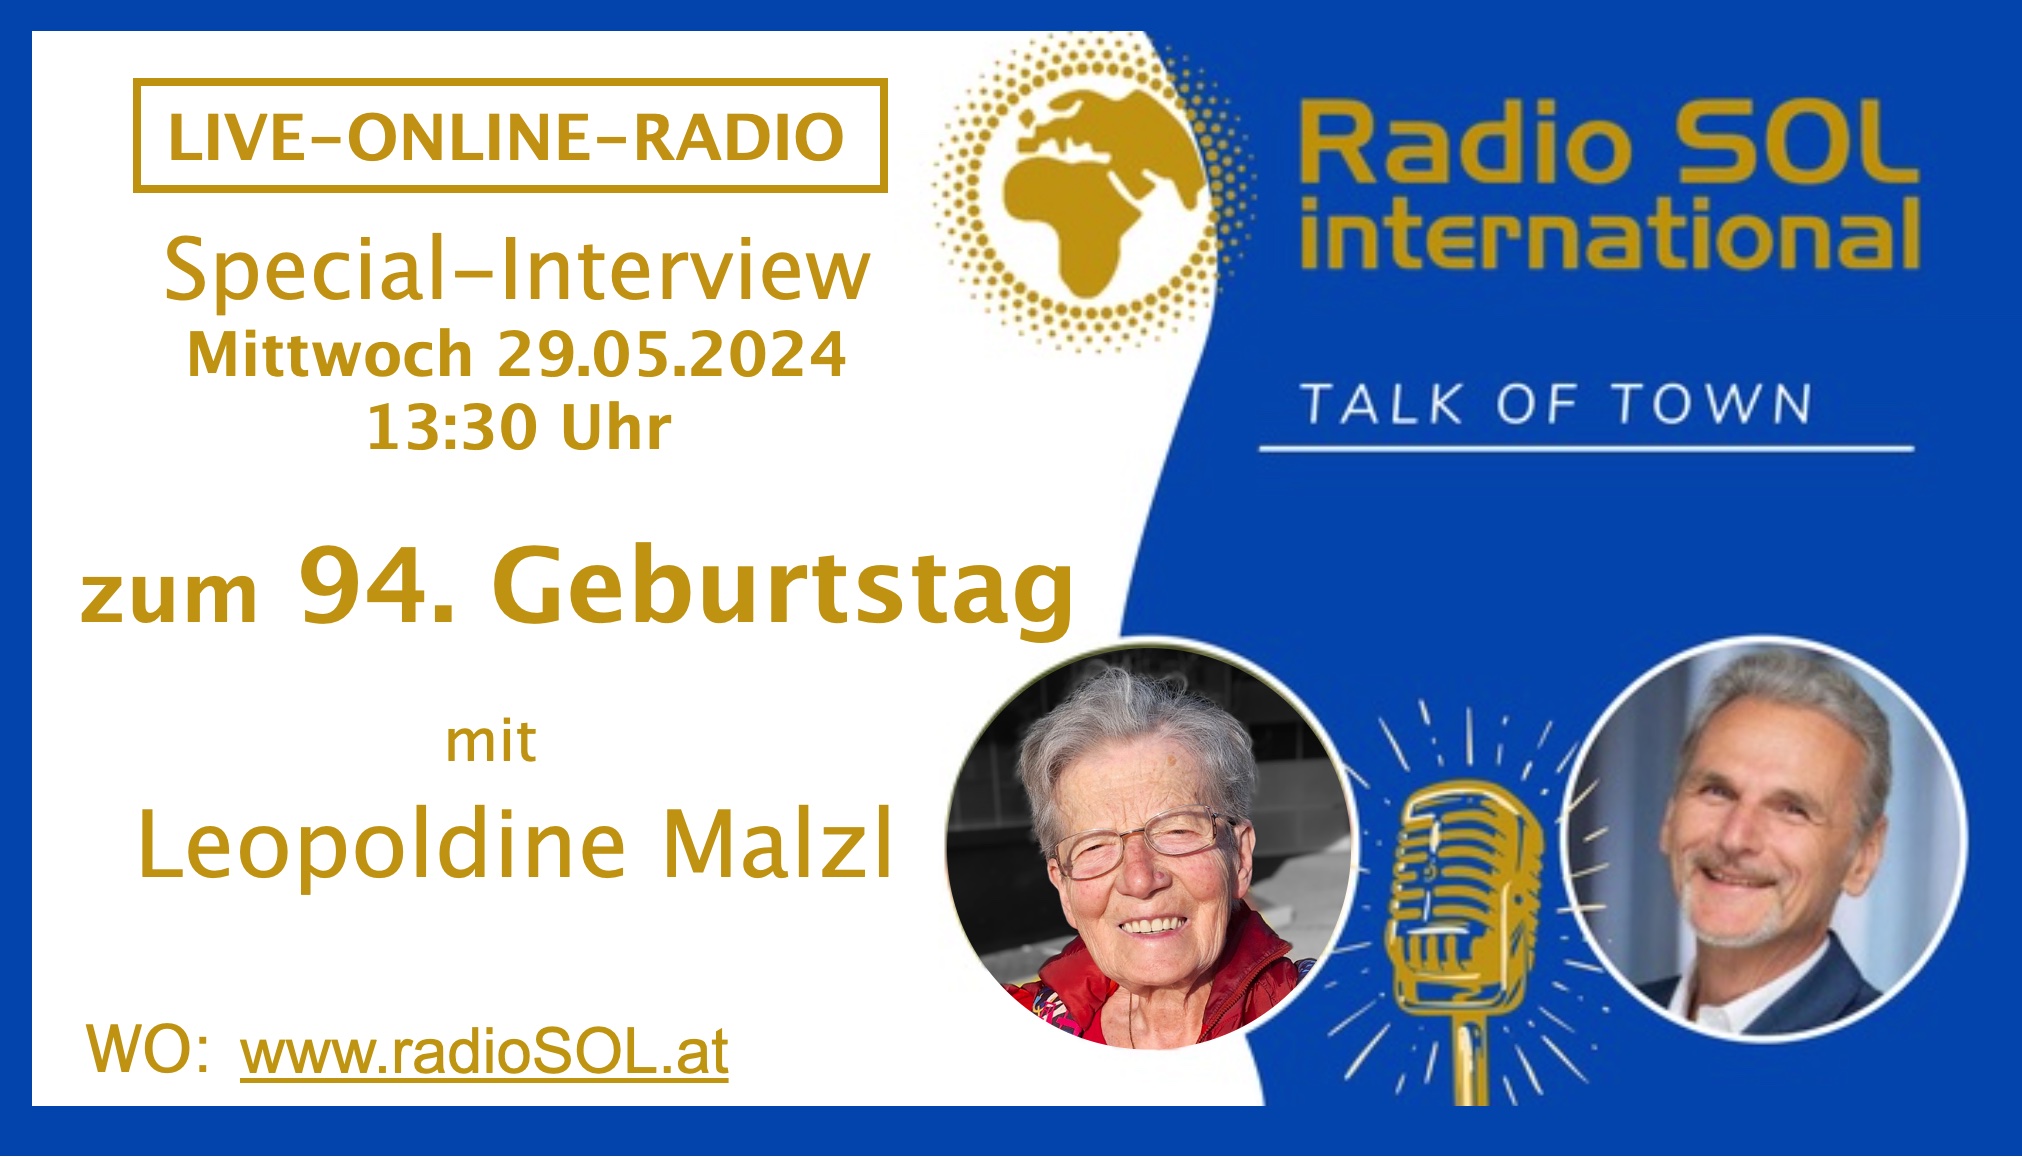 LIVE-ONLINE-RADIO Spezial Interview mit Leopoldine Malzl